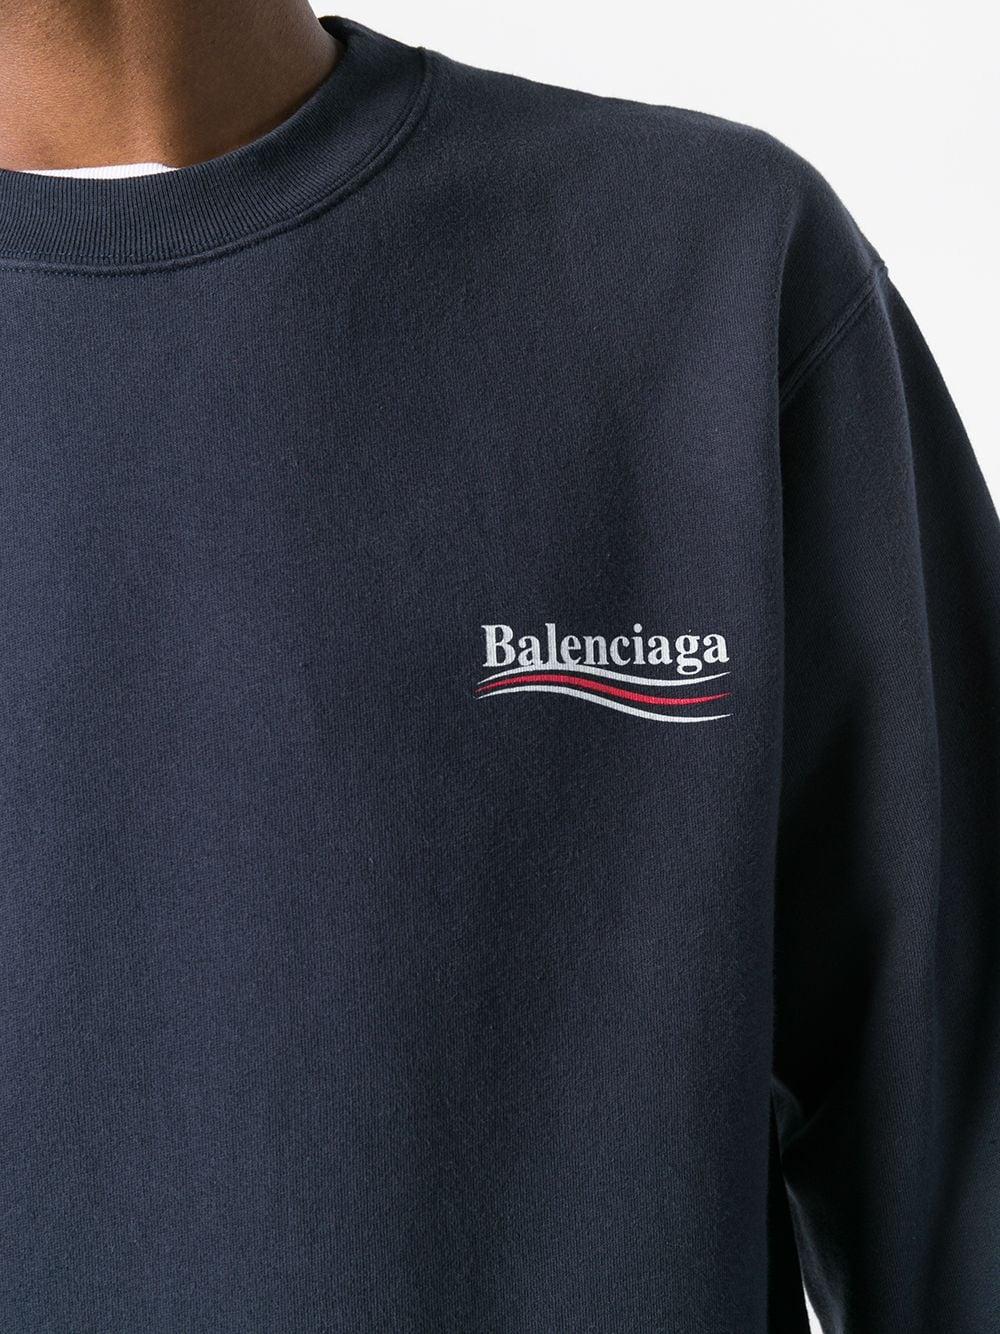 Balenciaga Felt Election Logo Sweatshirt in Blue for Men - Save 41% | Lyst